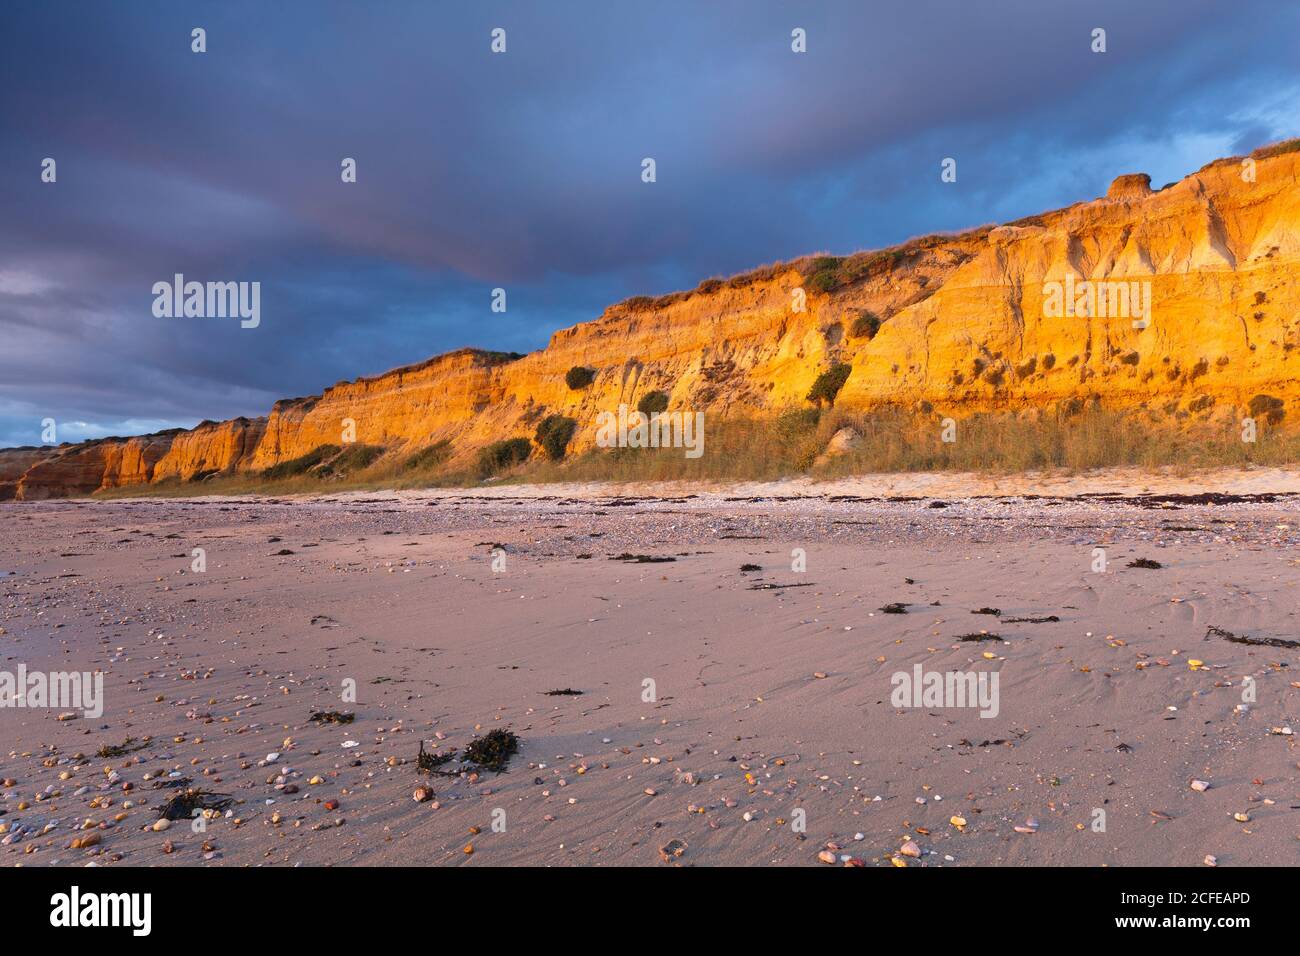 La spiaggia di Penestin Plage de la Mine d'Or presenta una scogliera color ocra. Un prodotto da millenni depositi fluviali. La spiaggia si trova nel vecchio delta Foto Stock